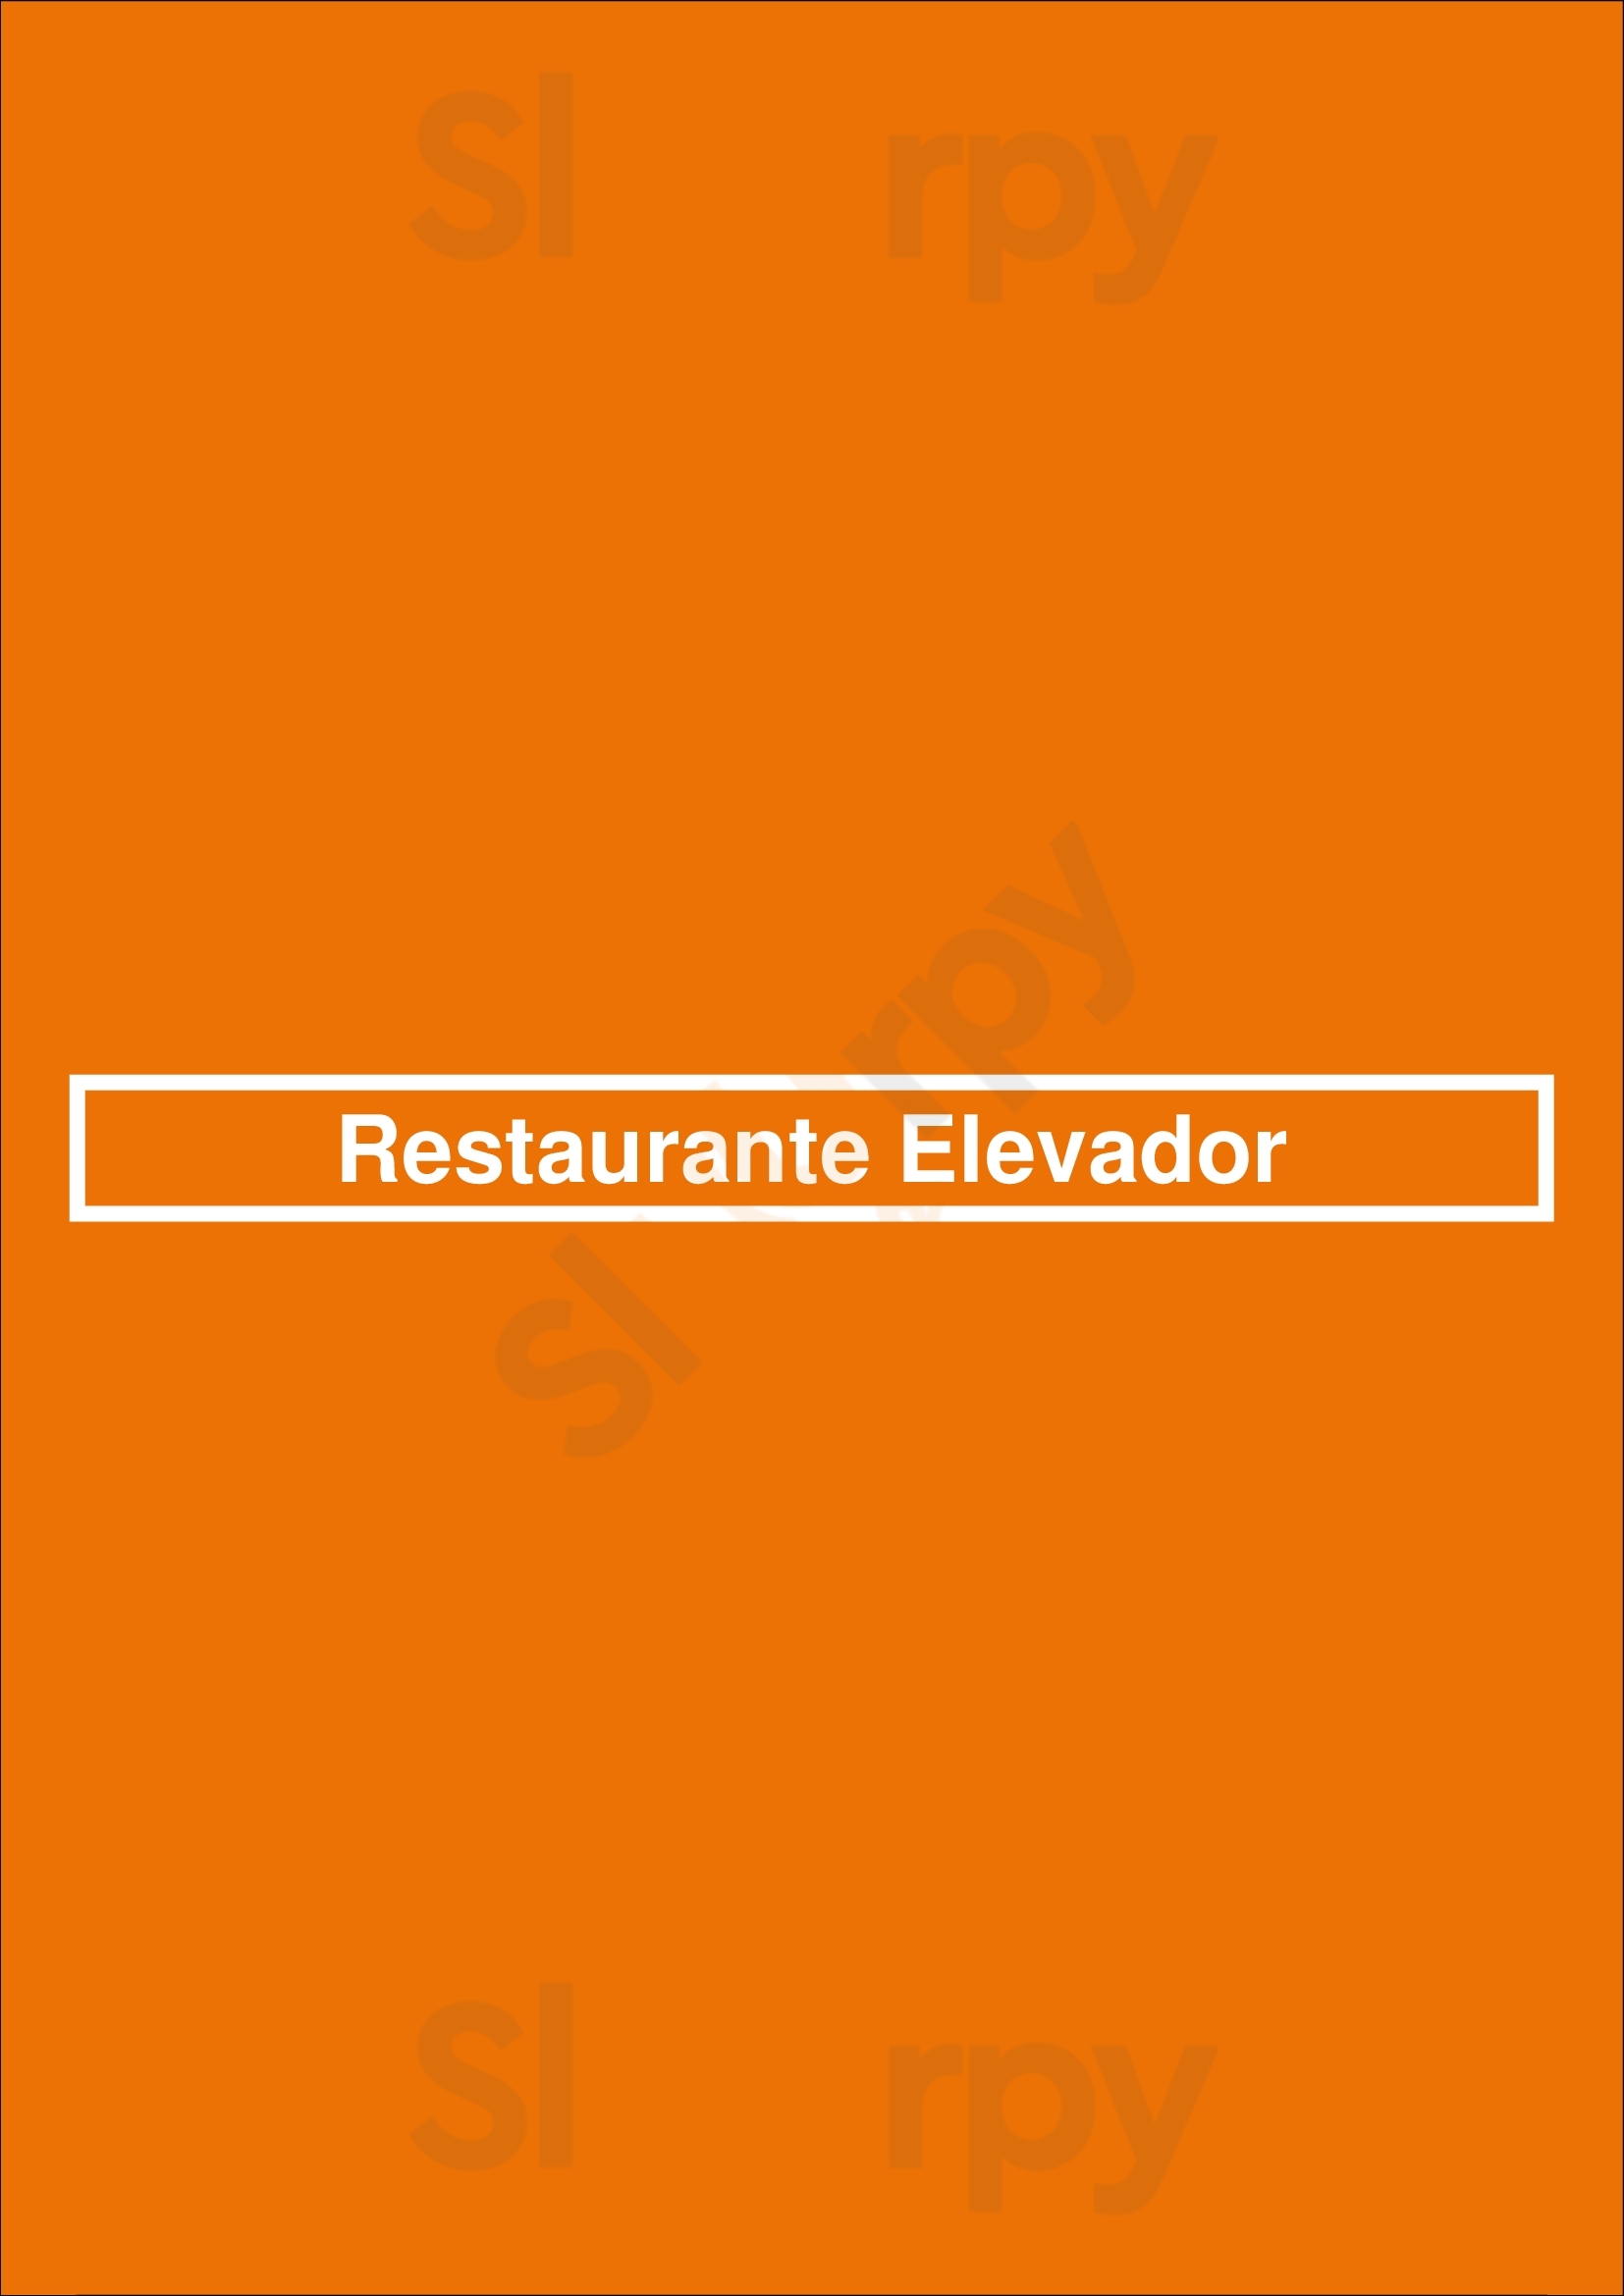 Restaurante Elevador Lisboa Menu - 1